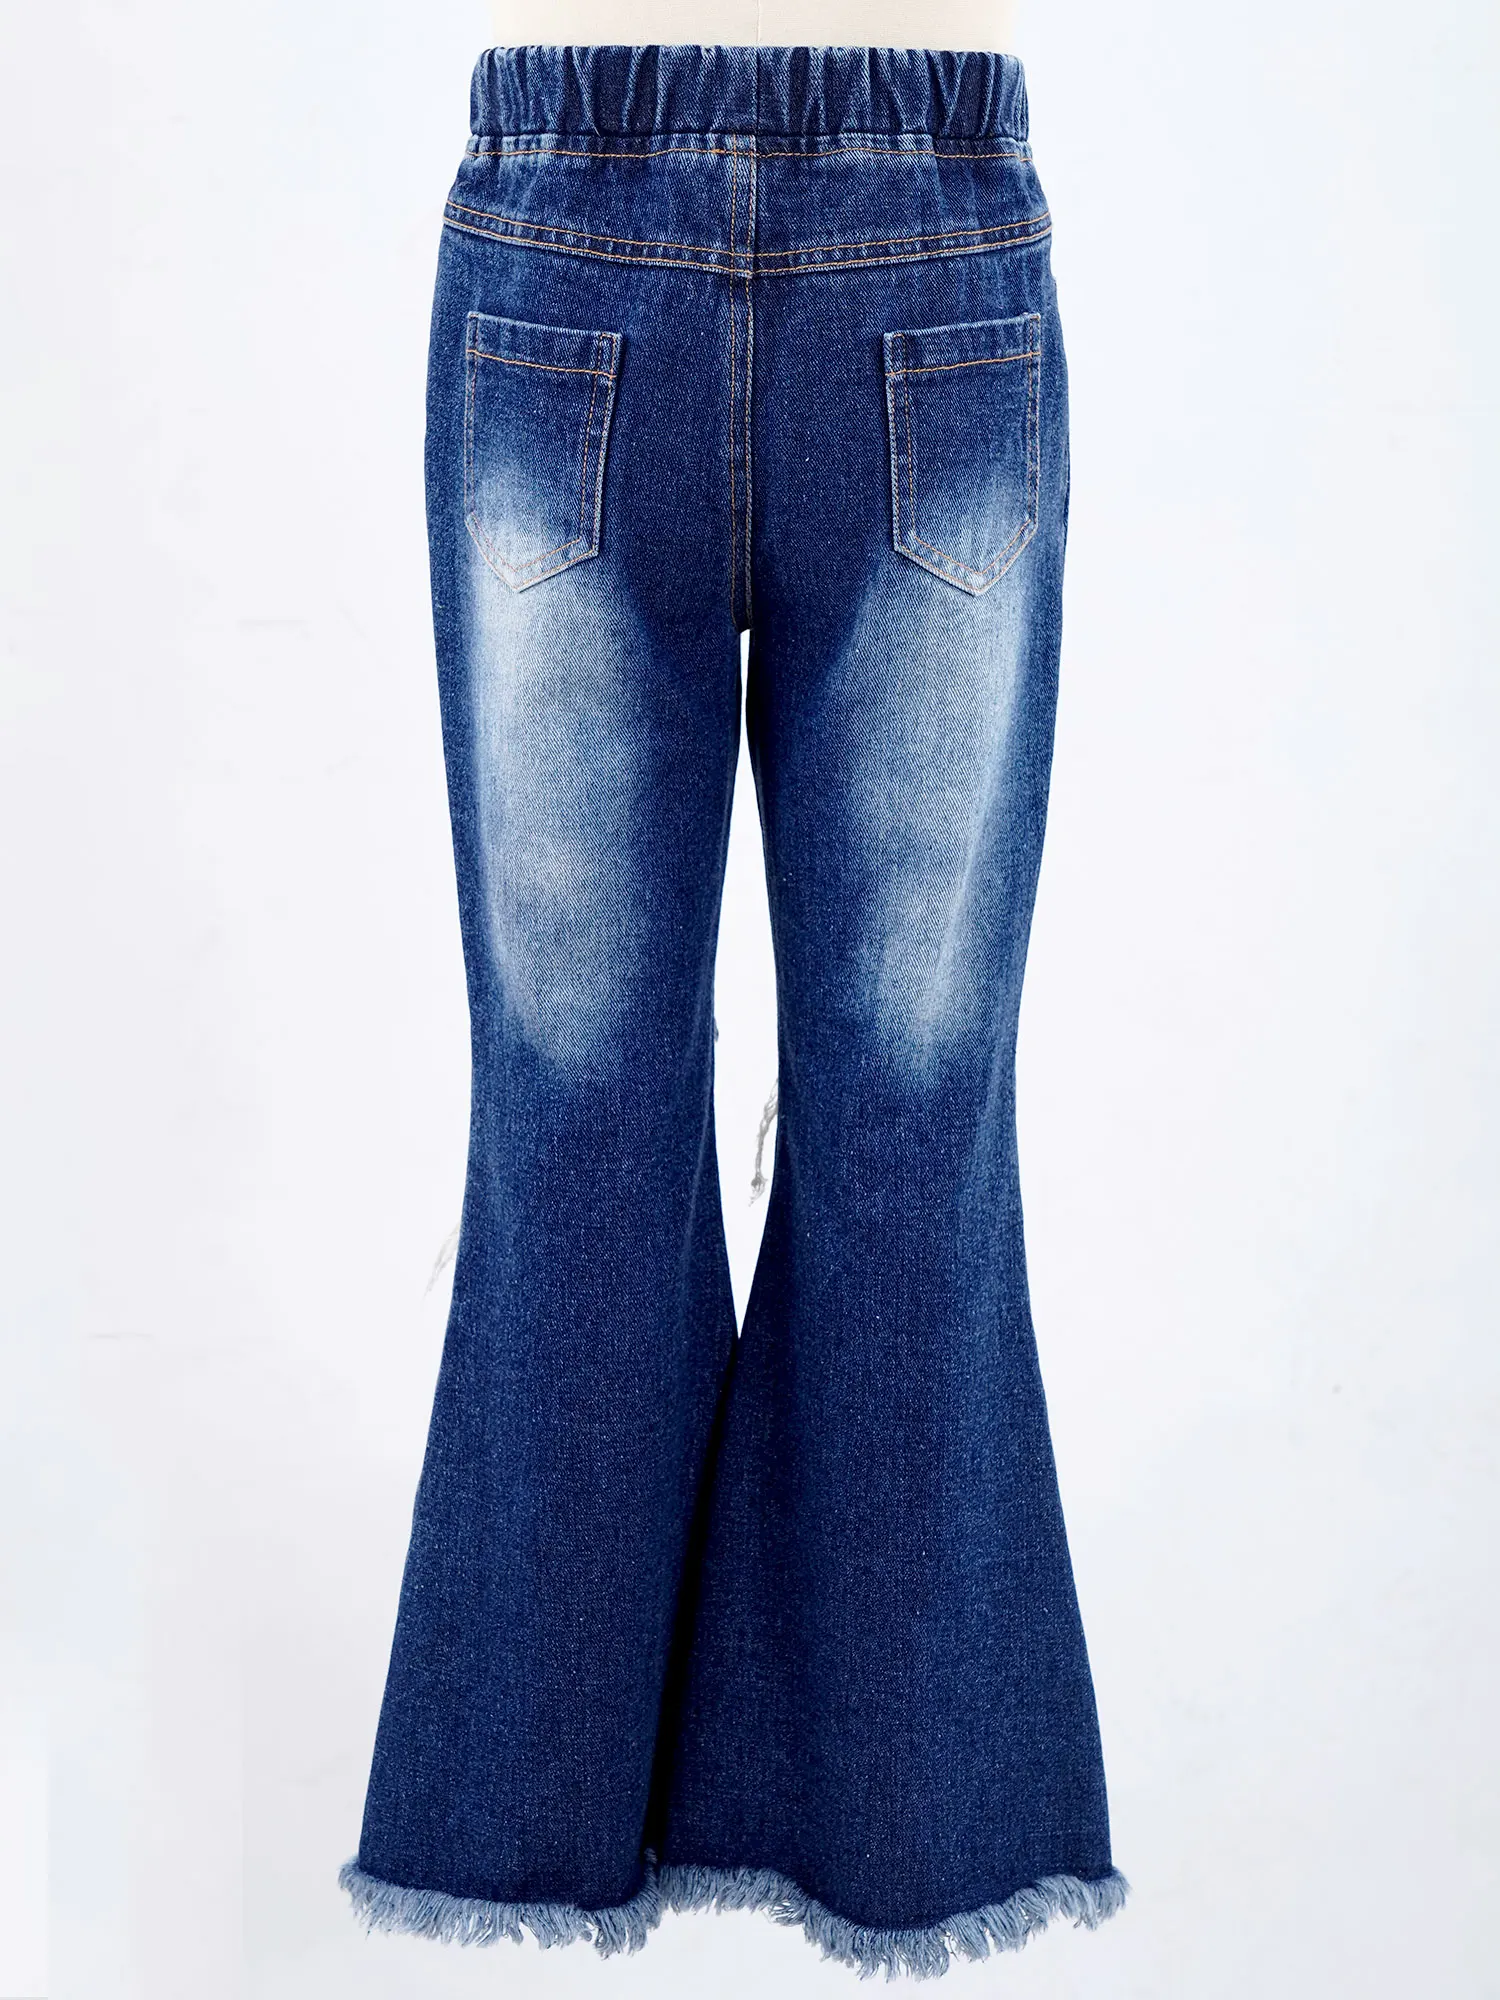 psainyal Baby Girls Bell-Bottom Tassel Flare Jeans Skinny Pants 